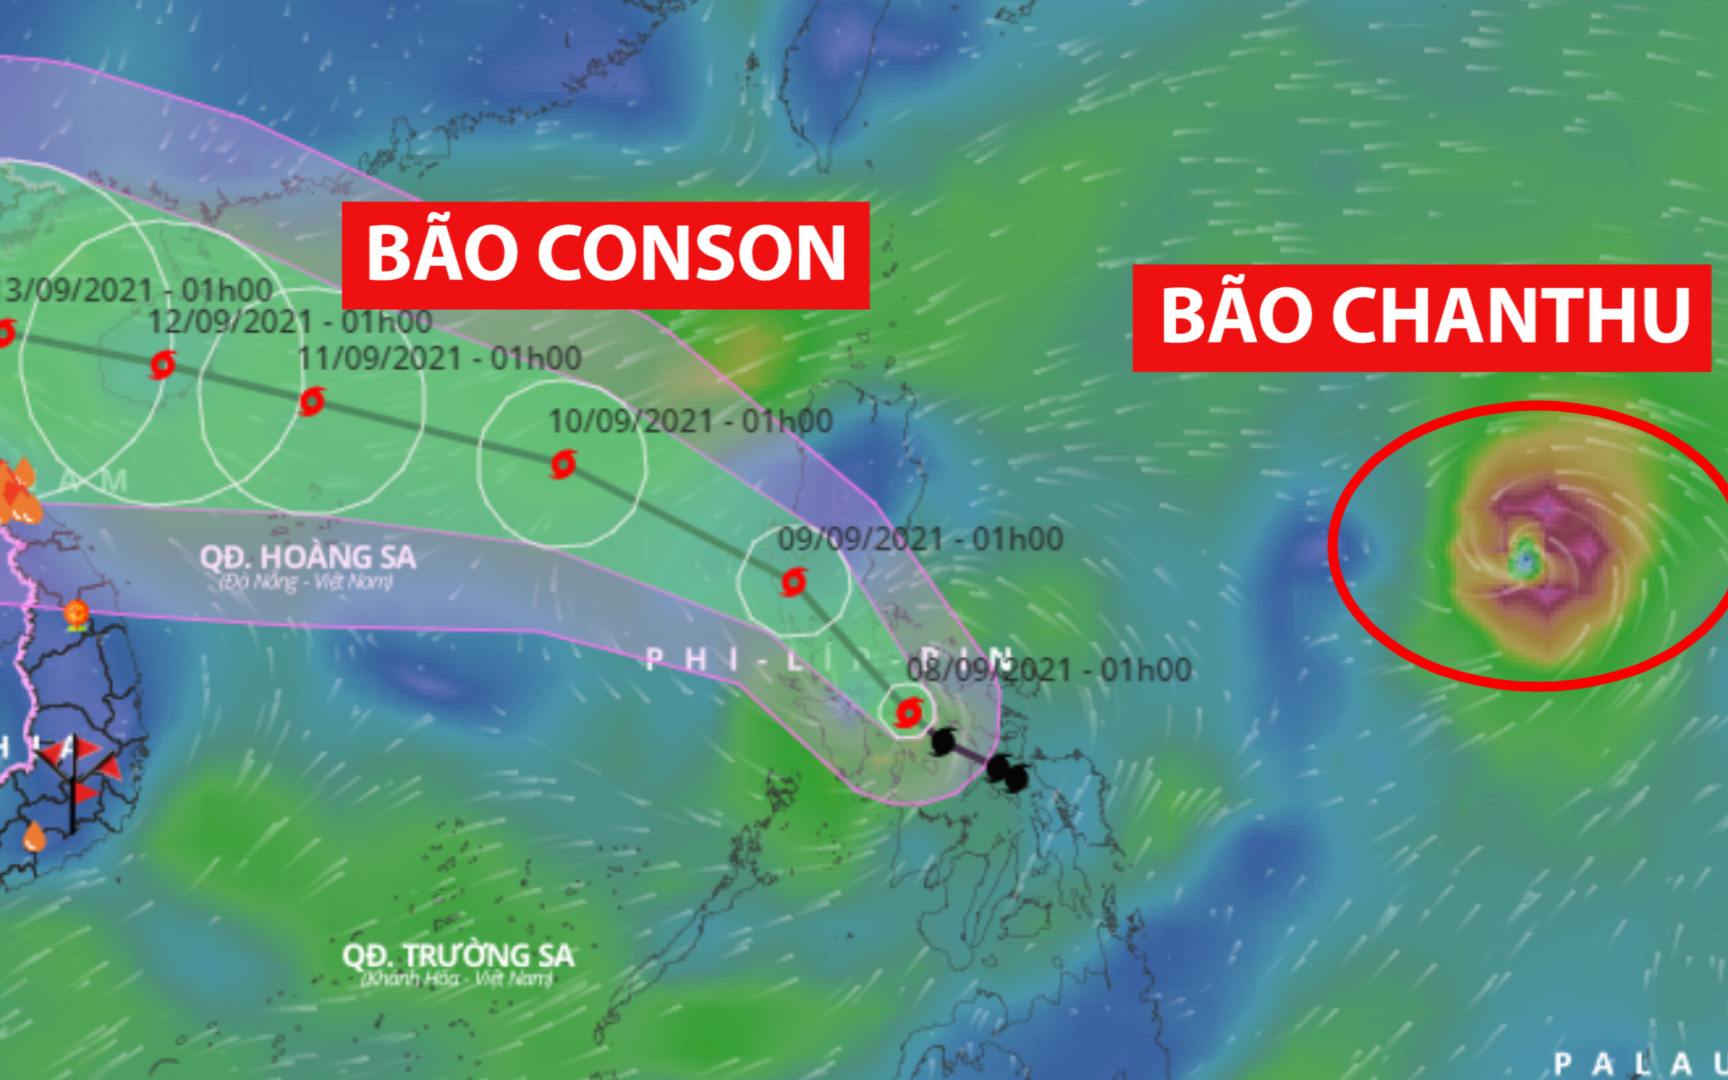 Hướng di chuyển của bão Conson có thể thay đổi bởi tác động của cơn bão mới Chanthu 